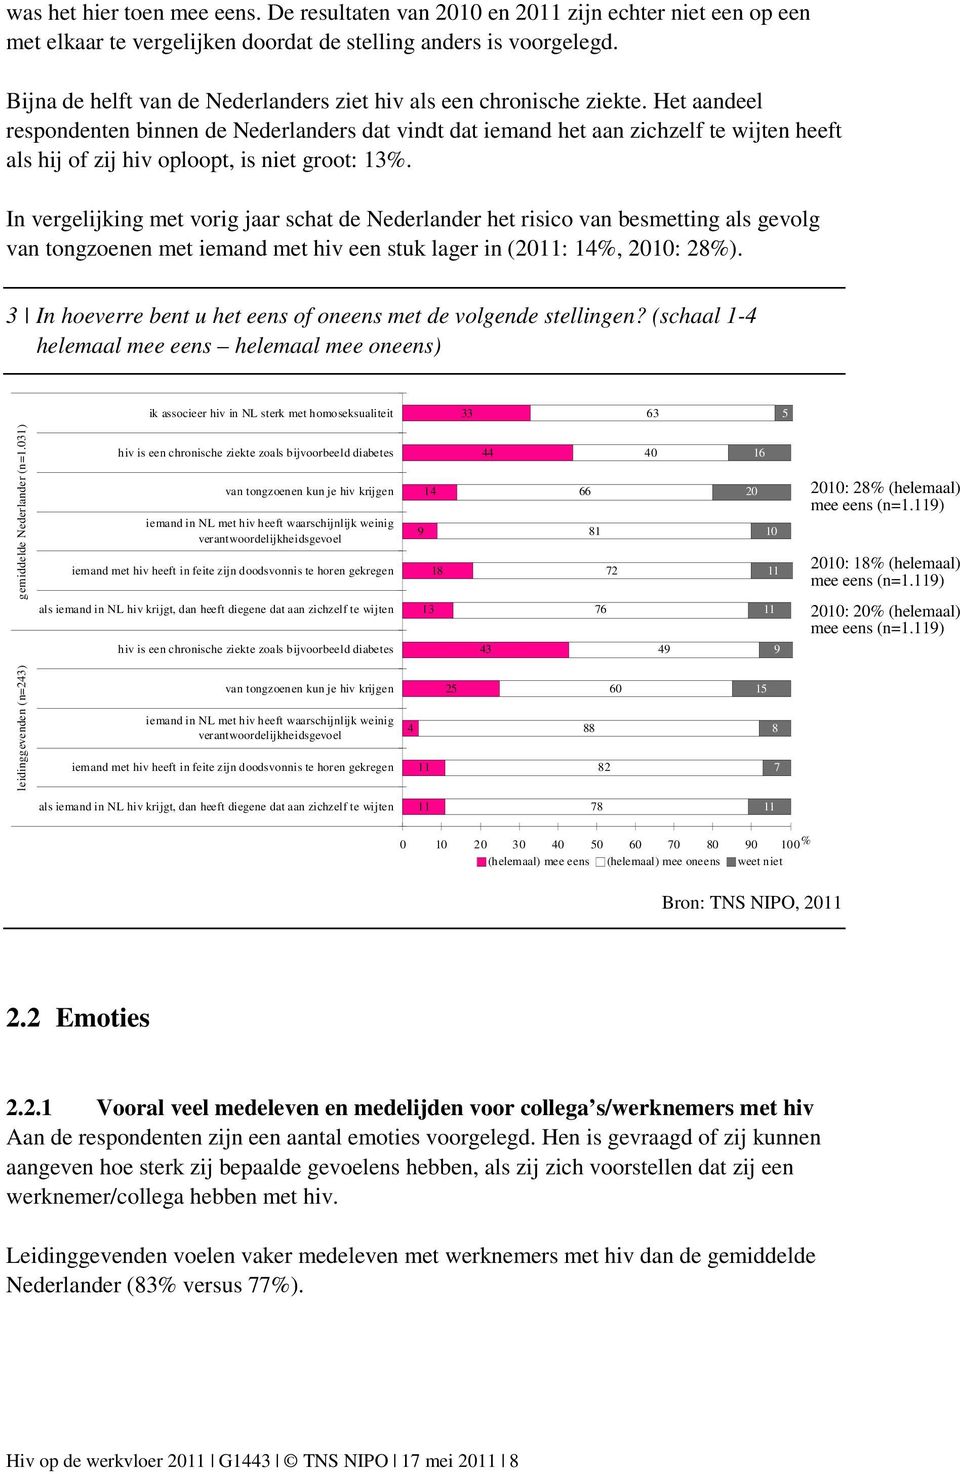 Het aandeel respondenten binnen de Nederlanders dat vindt dat iemand het aan zichzelf te wijten heeft als hij of zij hiv oploopt, is niet groot: 13%.